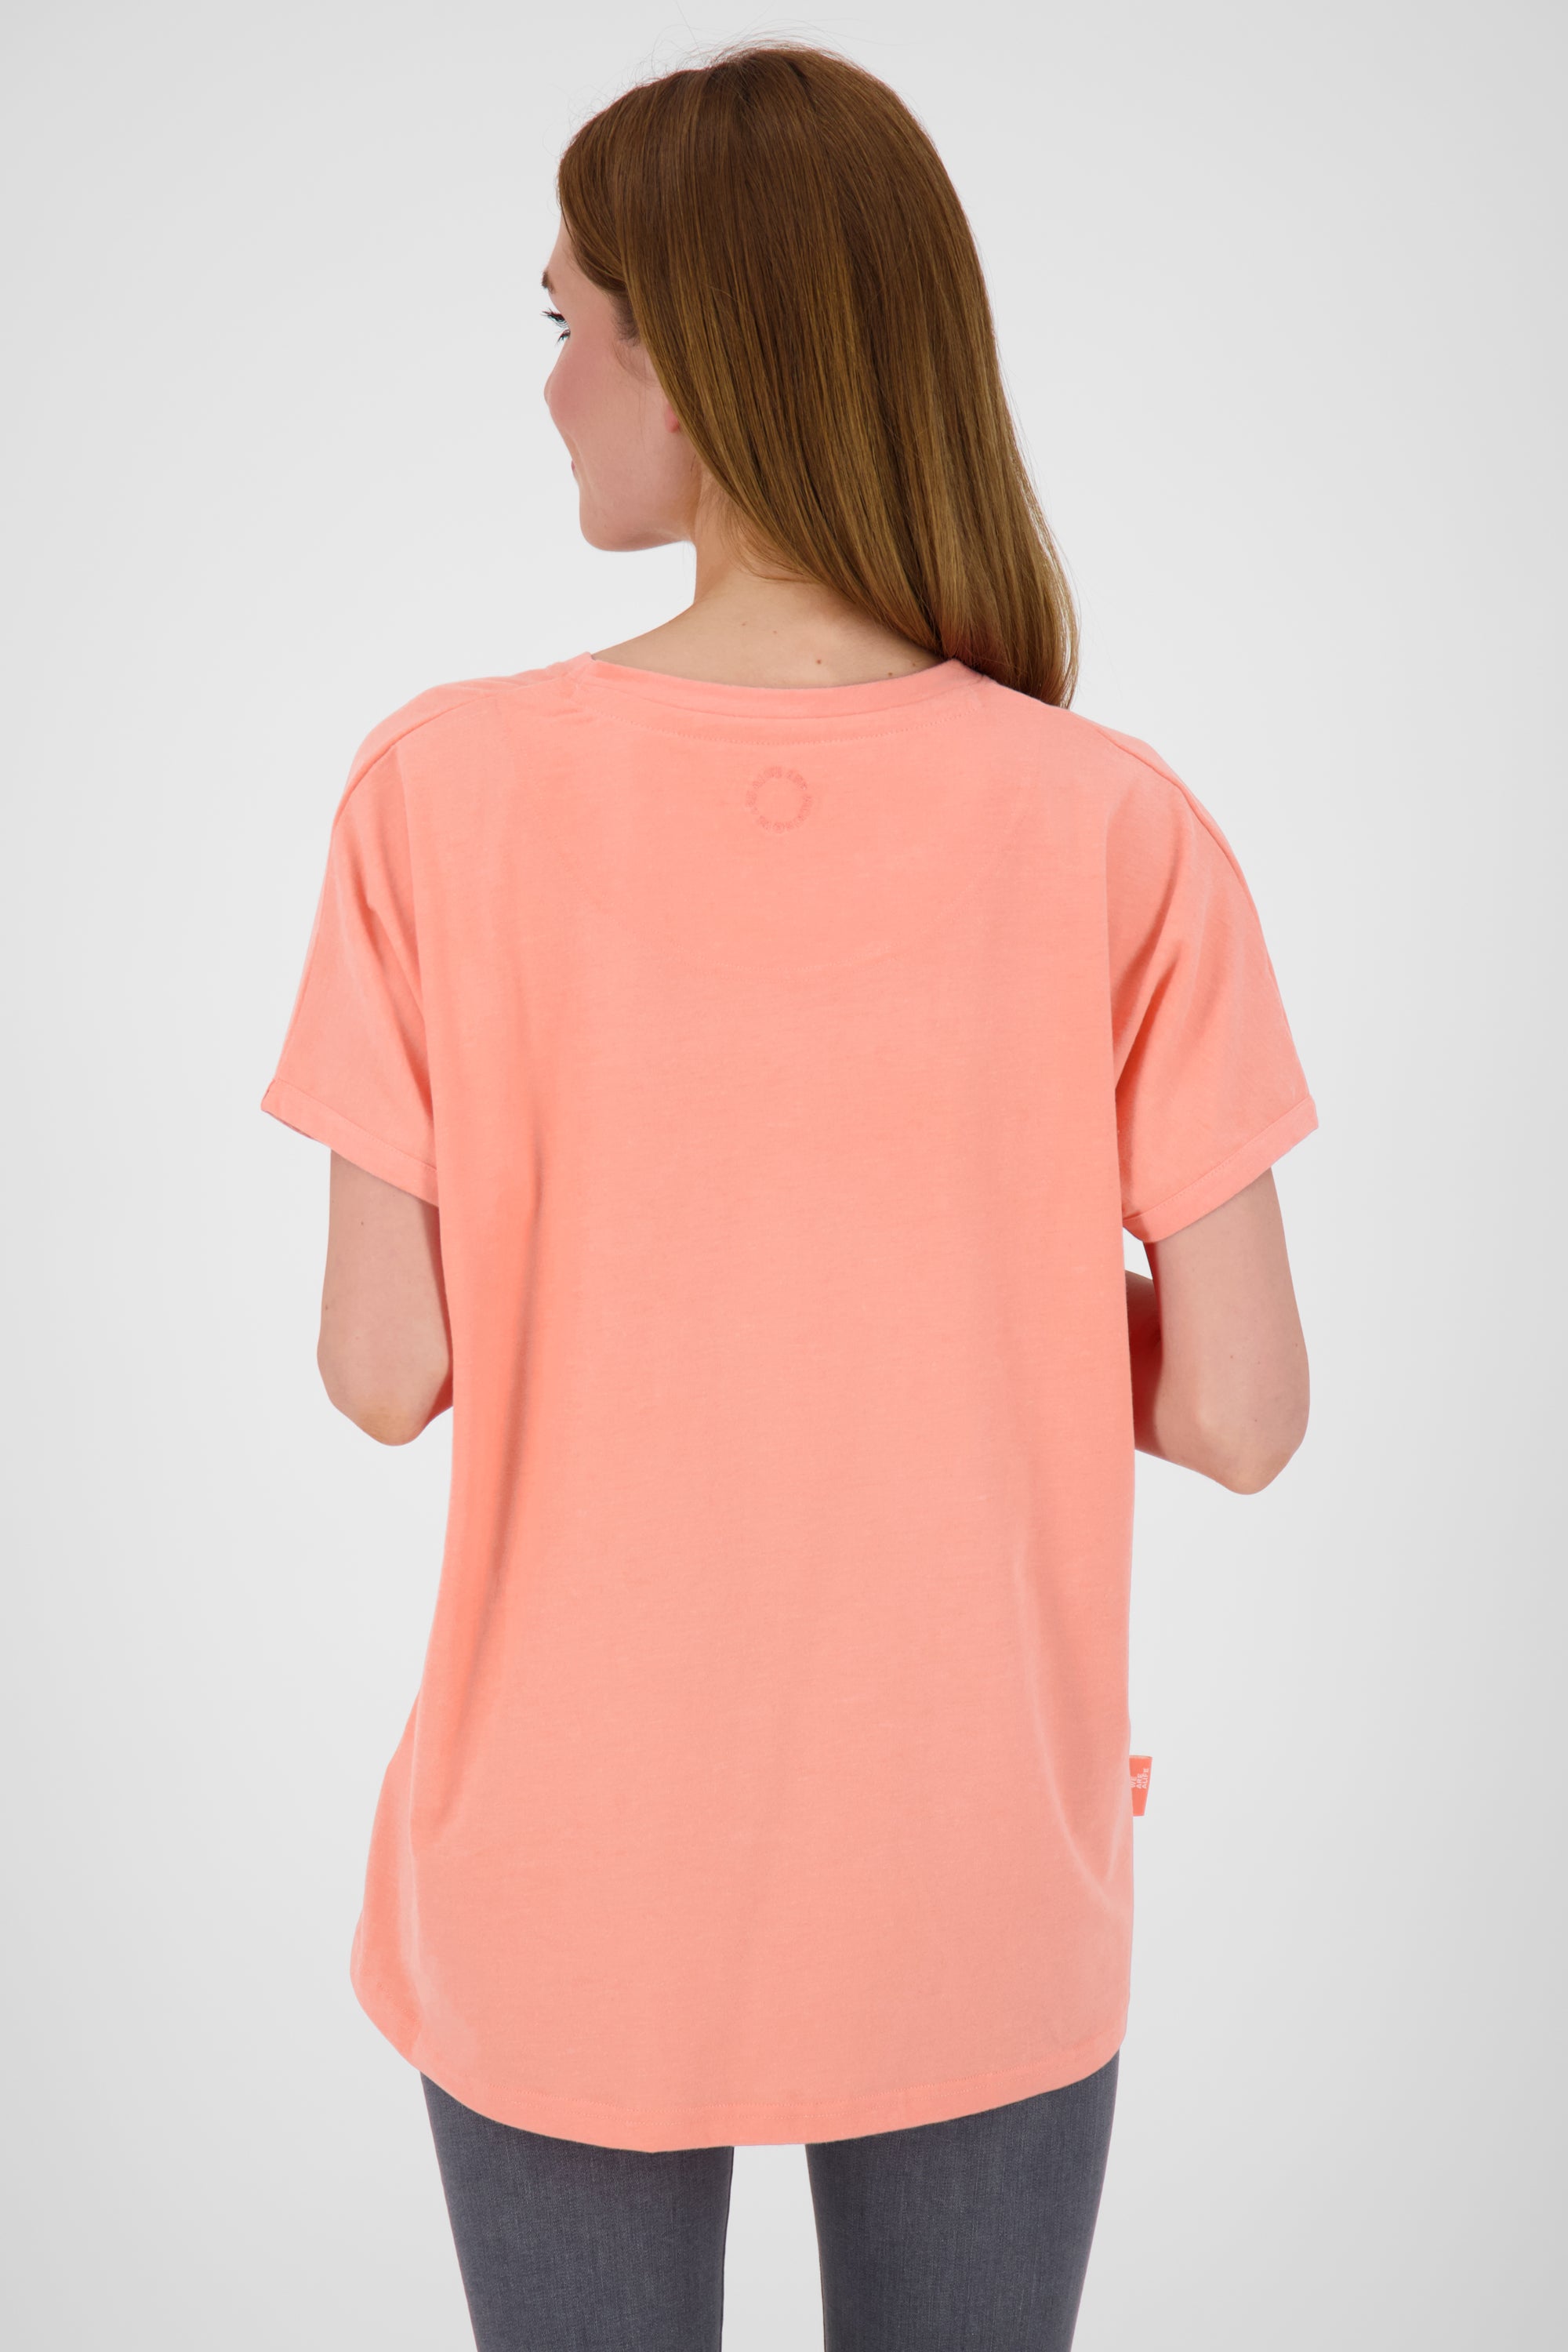 Feminines Kurzarmshirt DiniAK in trendigen Farben Orange